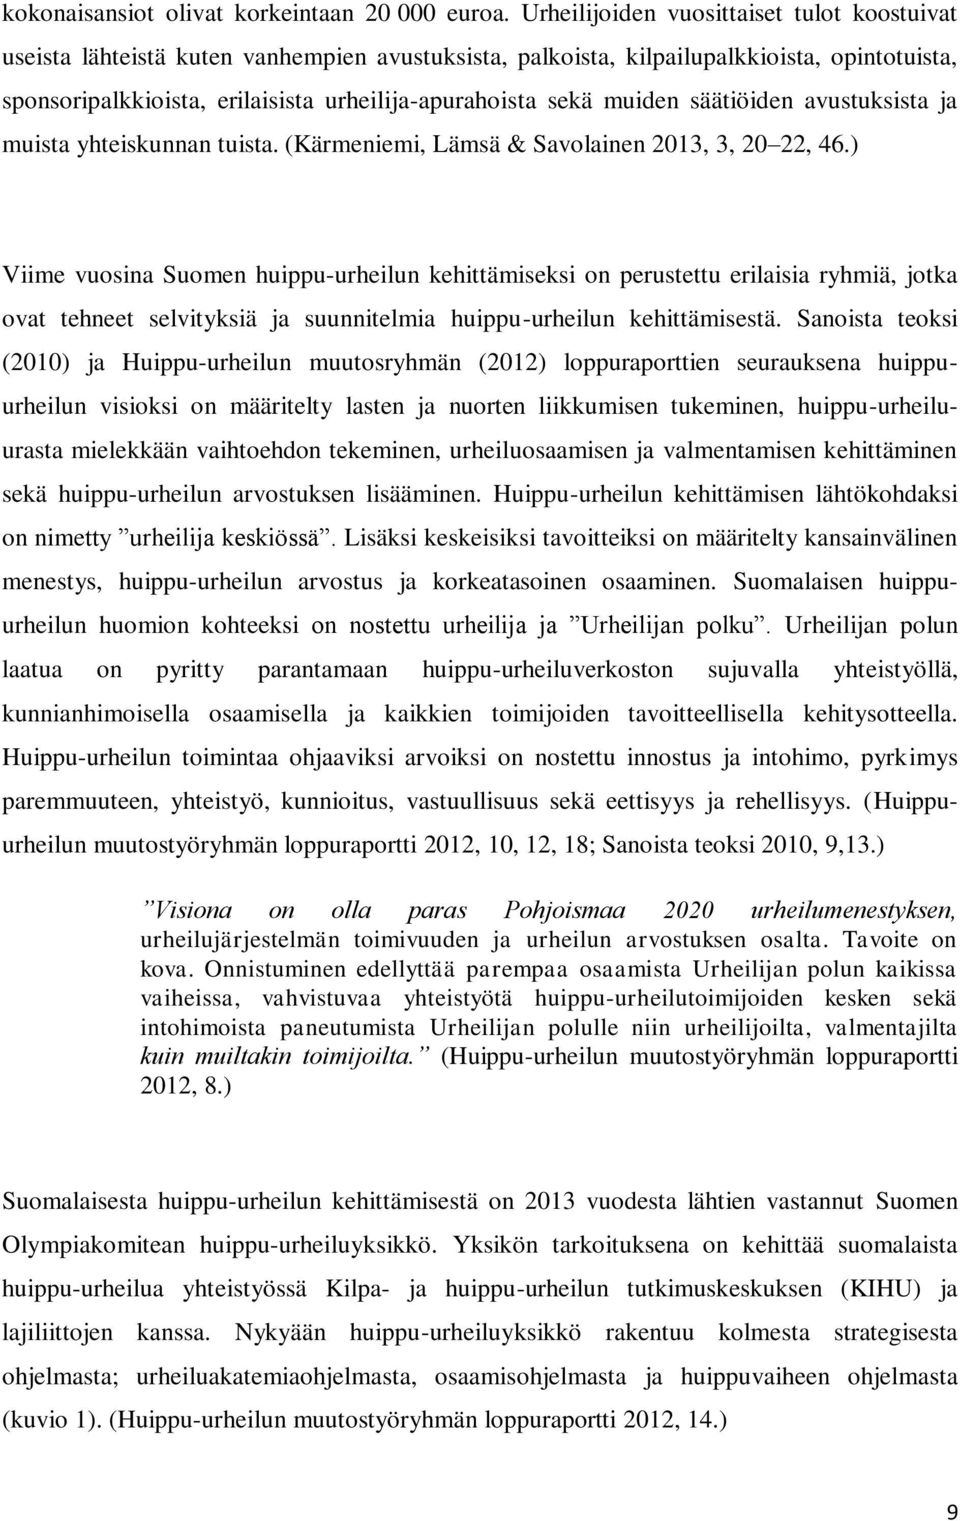 muiden säätiöiden avustuksista ja muista yhteiskunnan tuista. (Kärmeniemi, Lämsä & Savolainen 2013, 3, 20 22, 46.